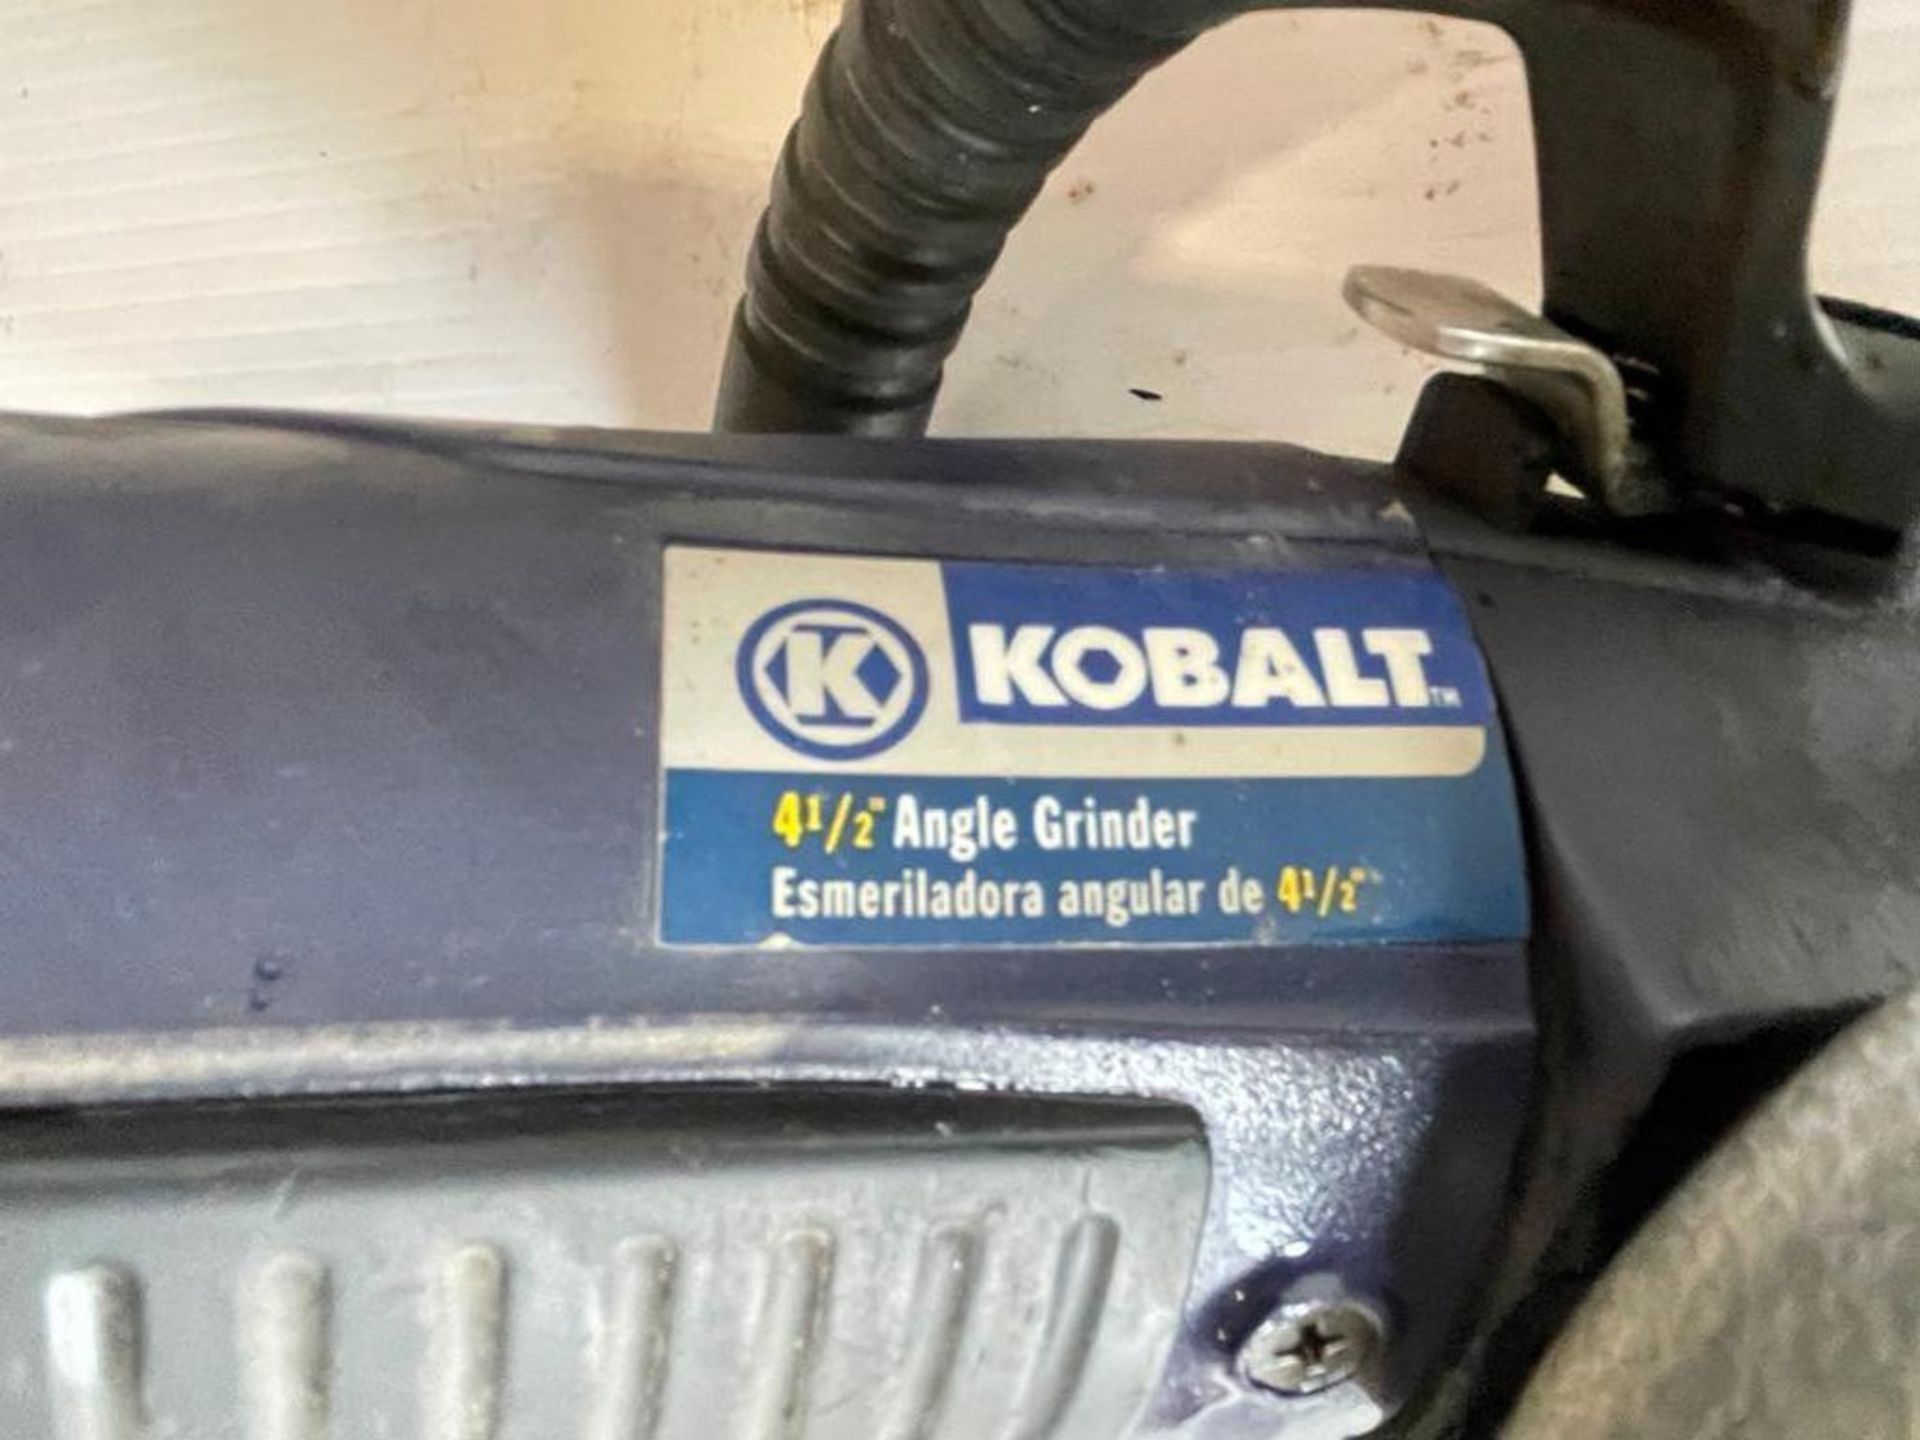 Kobalt 4 1/2" Angle Grinder, 120V. Located in Hazelwood, MO - Image 5 of 6